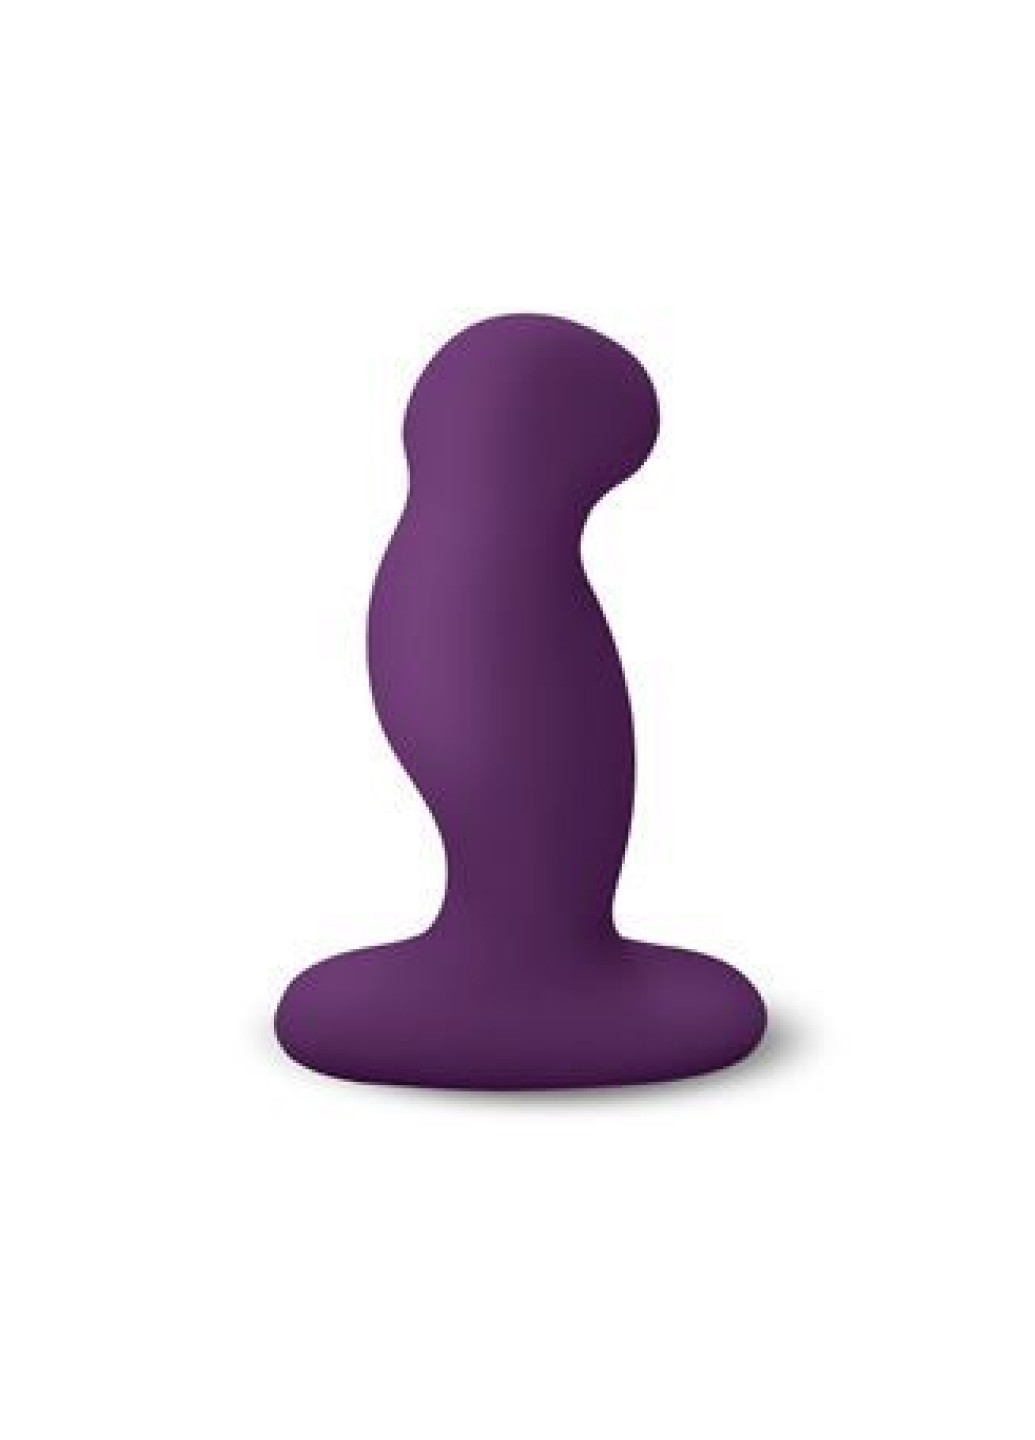 Вибромассажер G-Play Plus S Purple, макс диаметр 2,3см, перезаряжаемый Nexus (251251027)